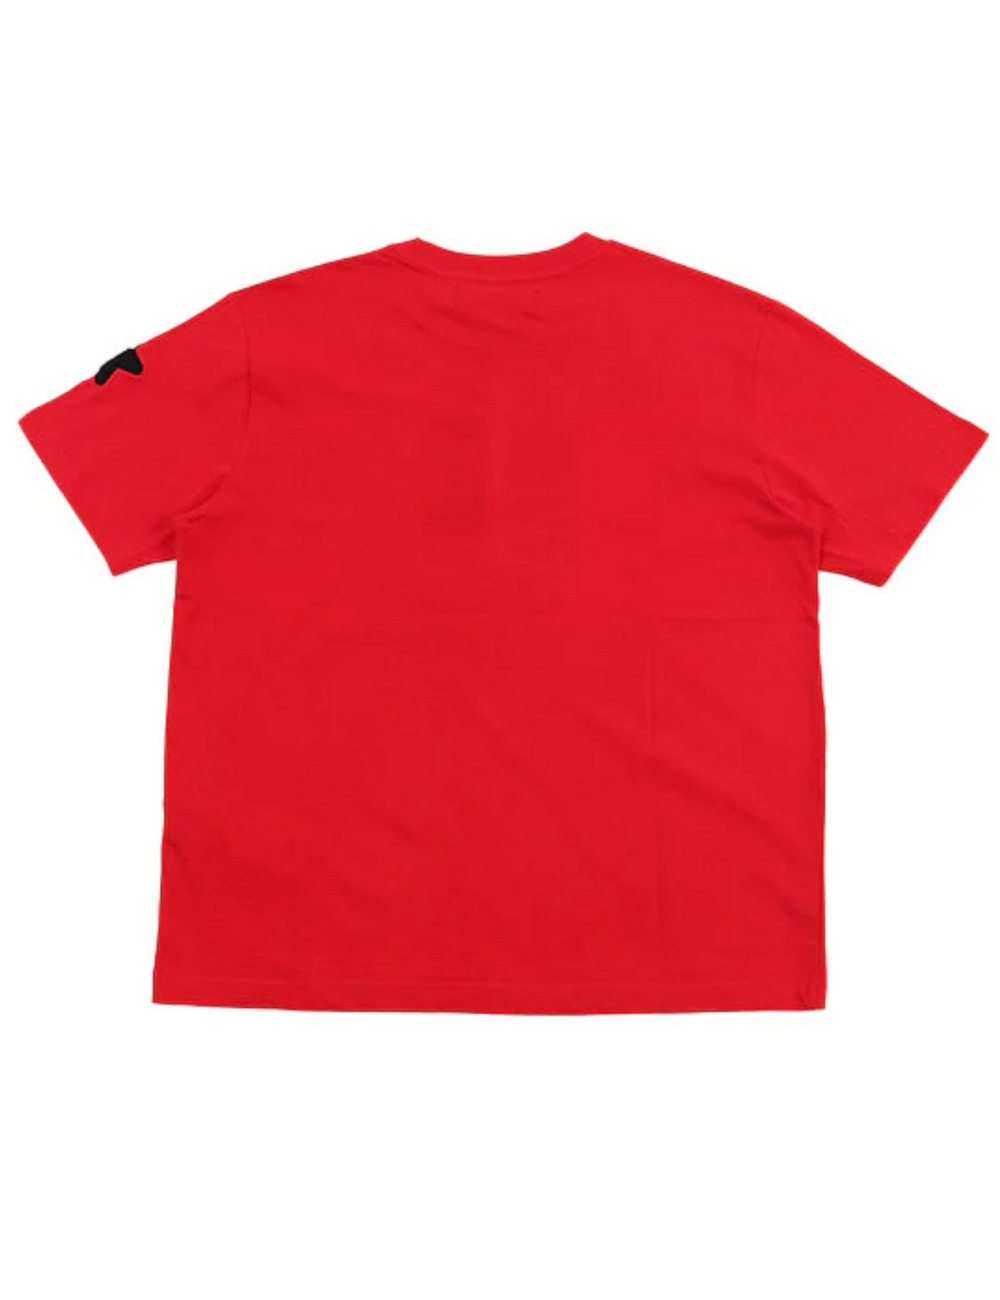 レインボースカルTシャツ(半袖) / RAINBOW SKULL T SHIRT 詳細画像 レッド 2